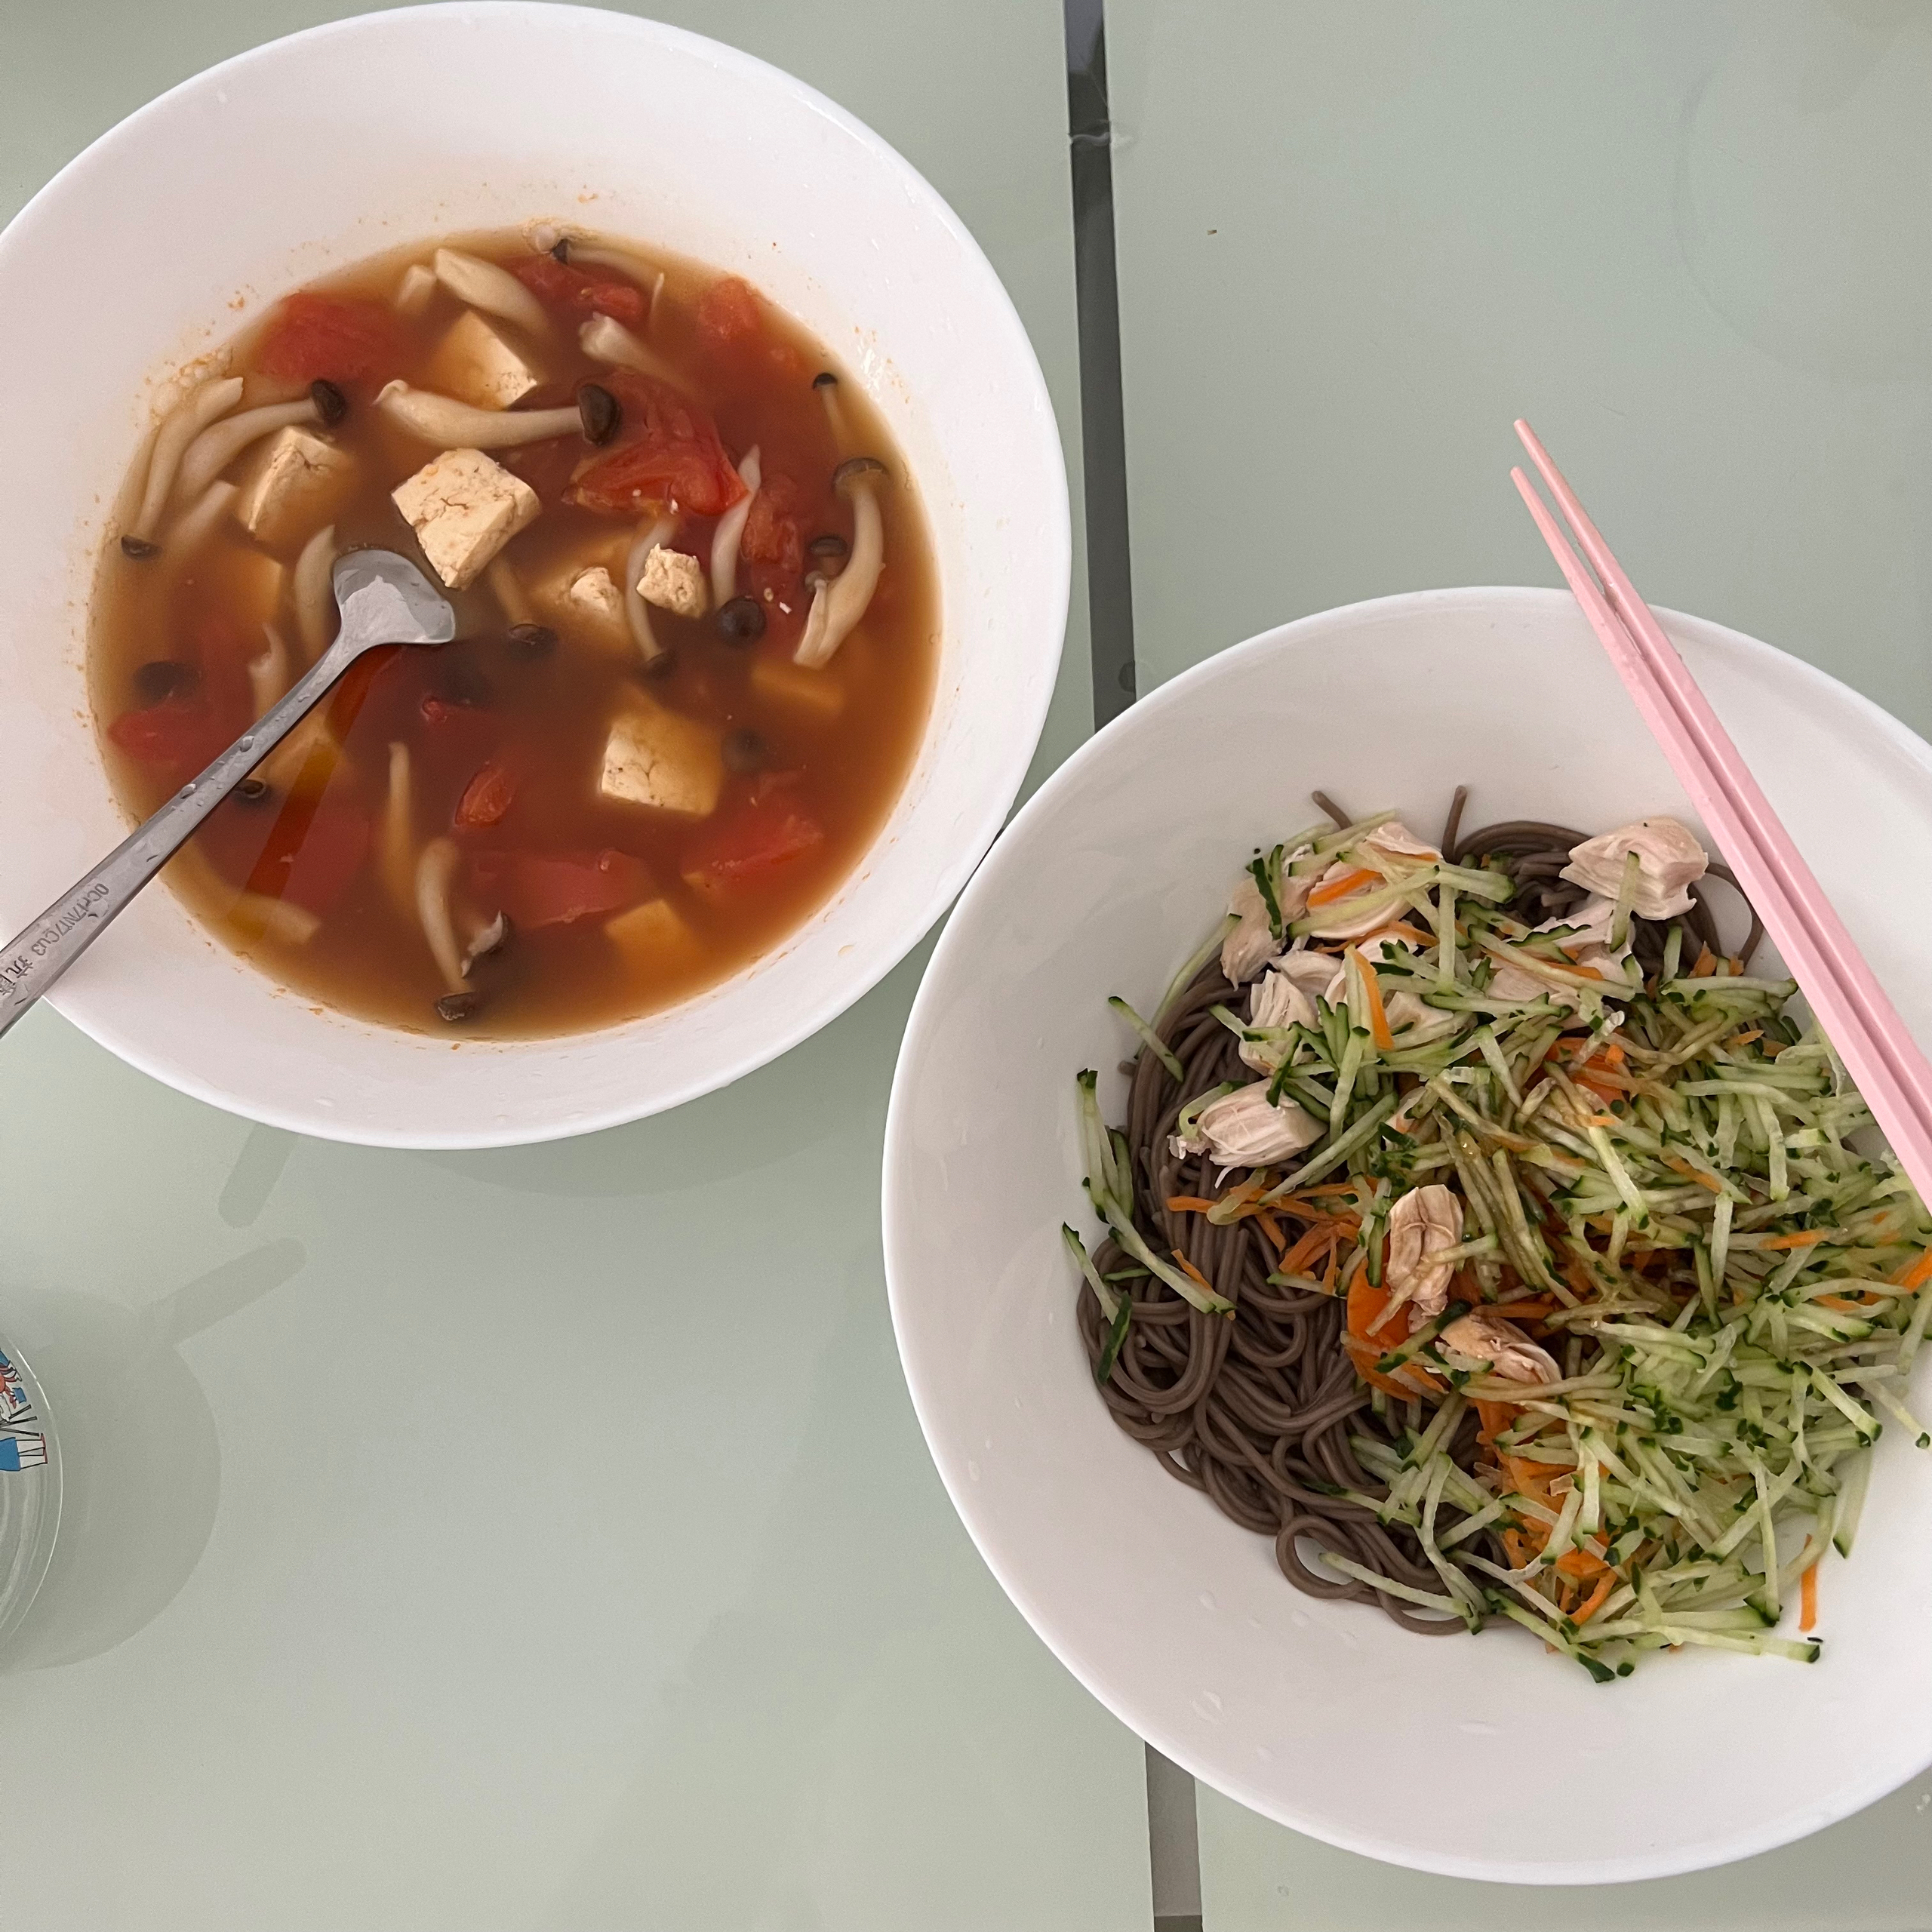 番茄豆腐汤+蚝油生菜